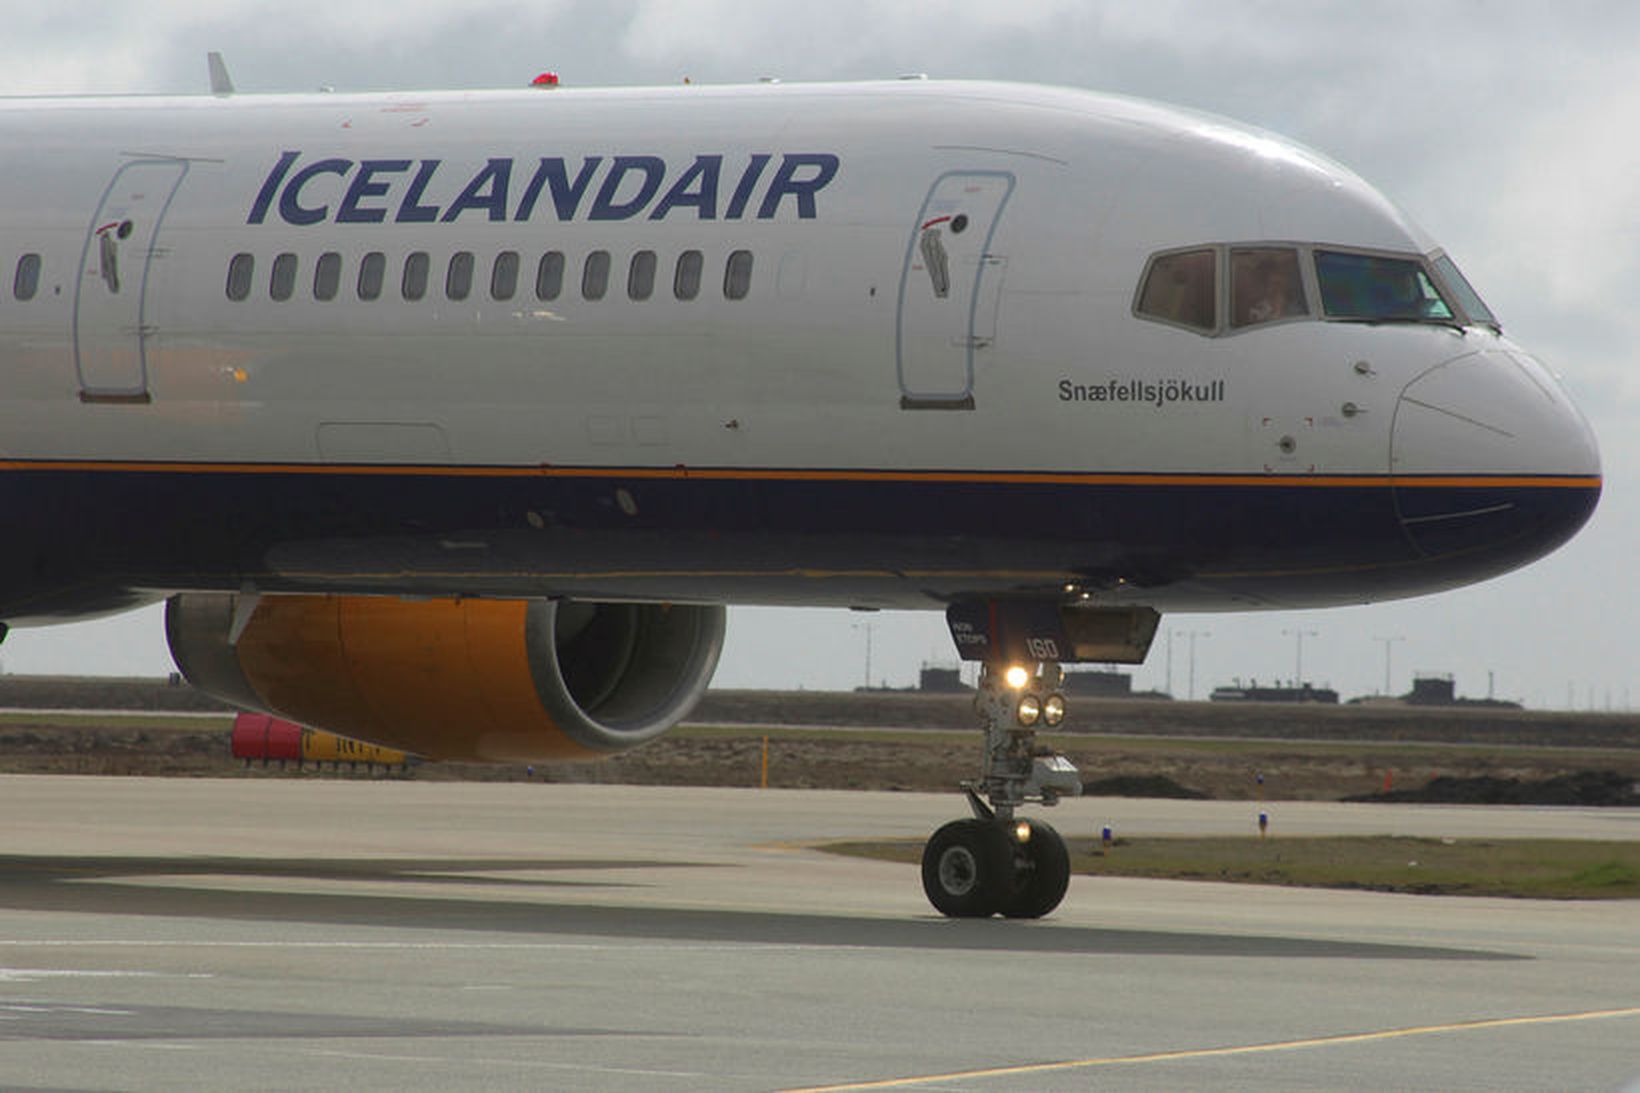 Flugvirkjar Icelandair hafa boðað ótímabundið verkfall sunnudagin 17. desember hafi …